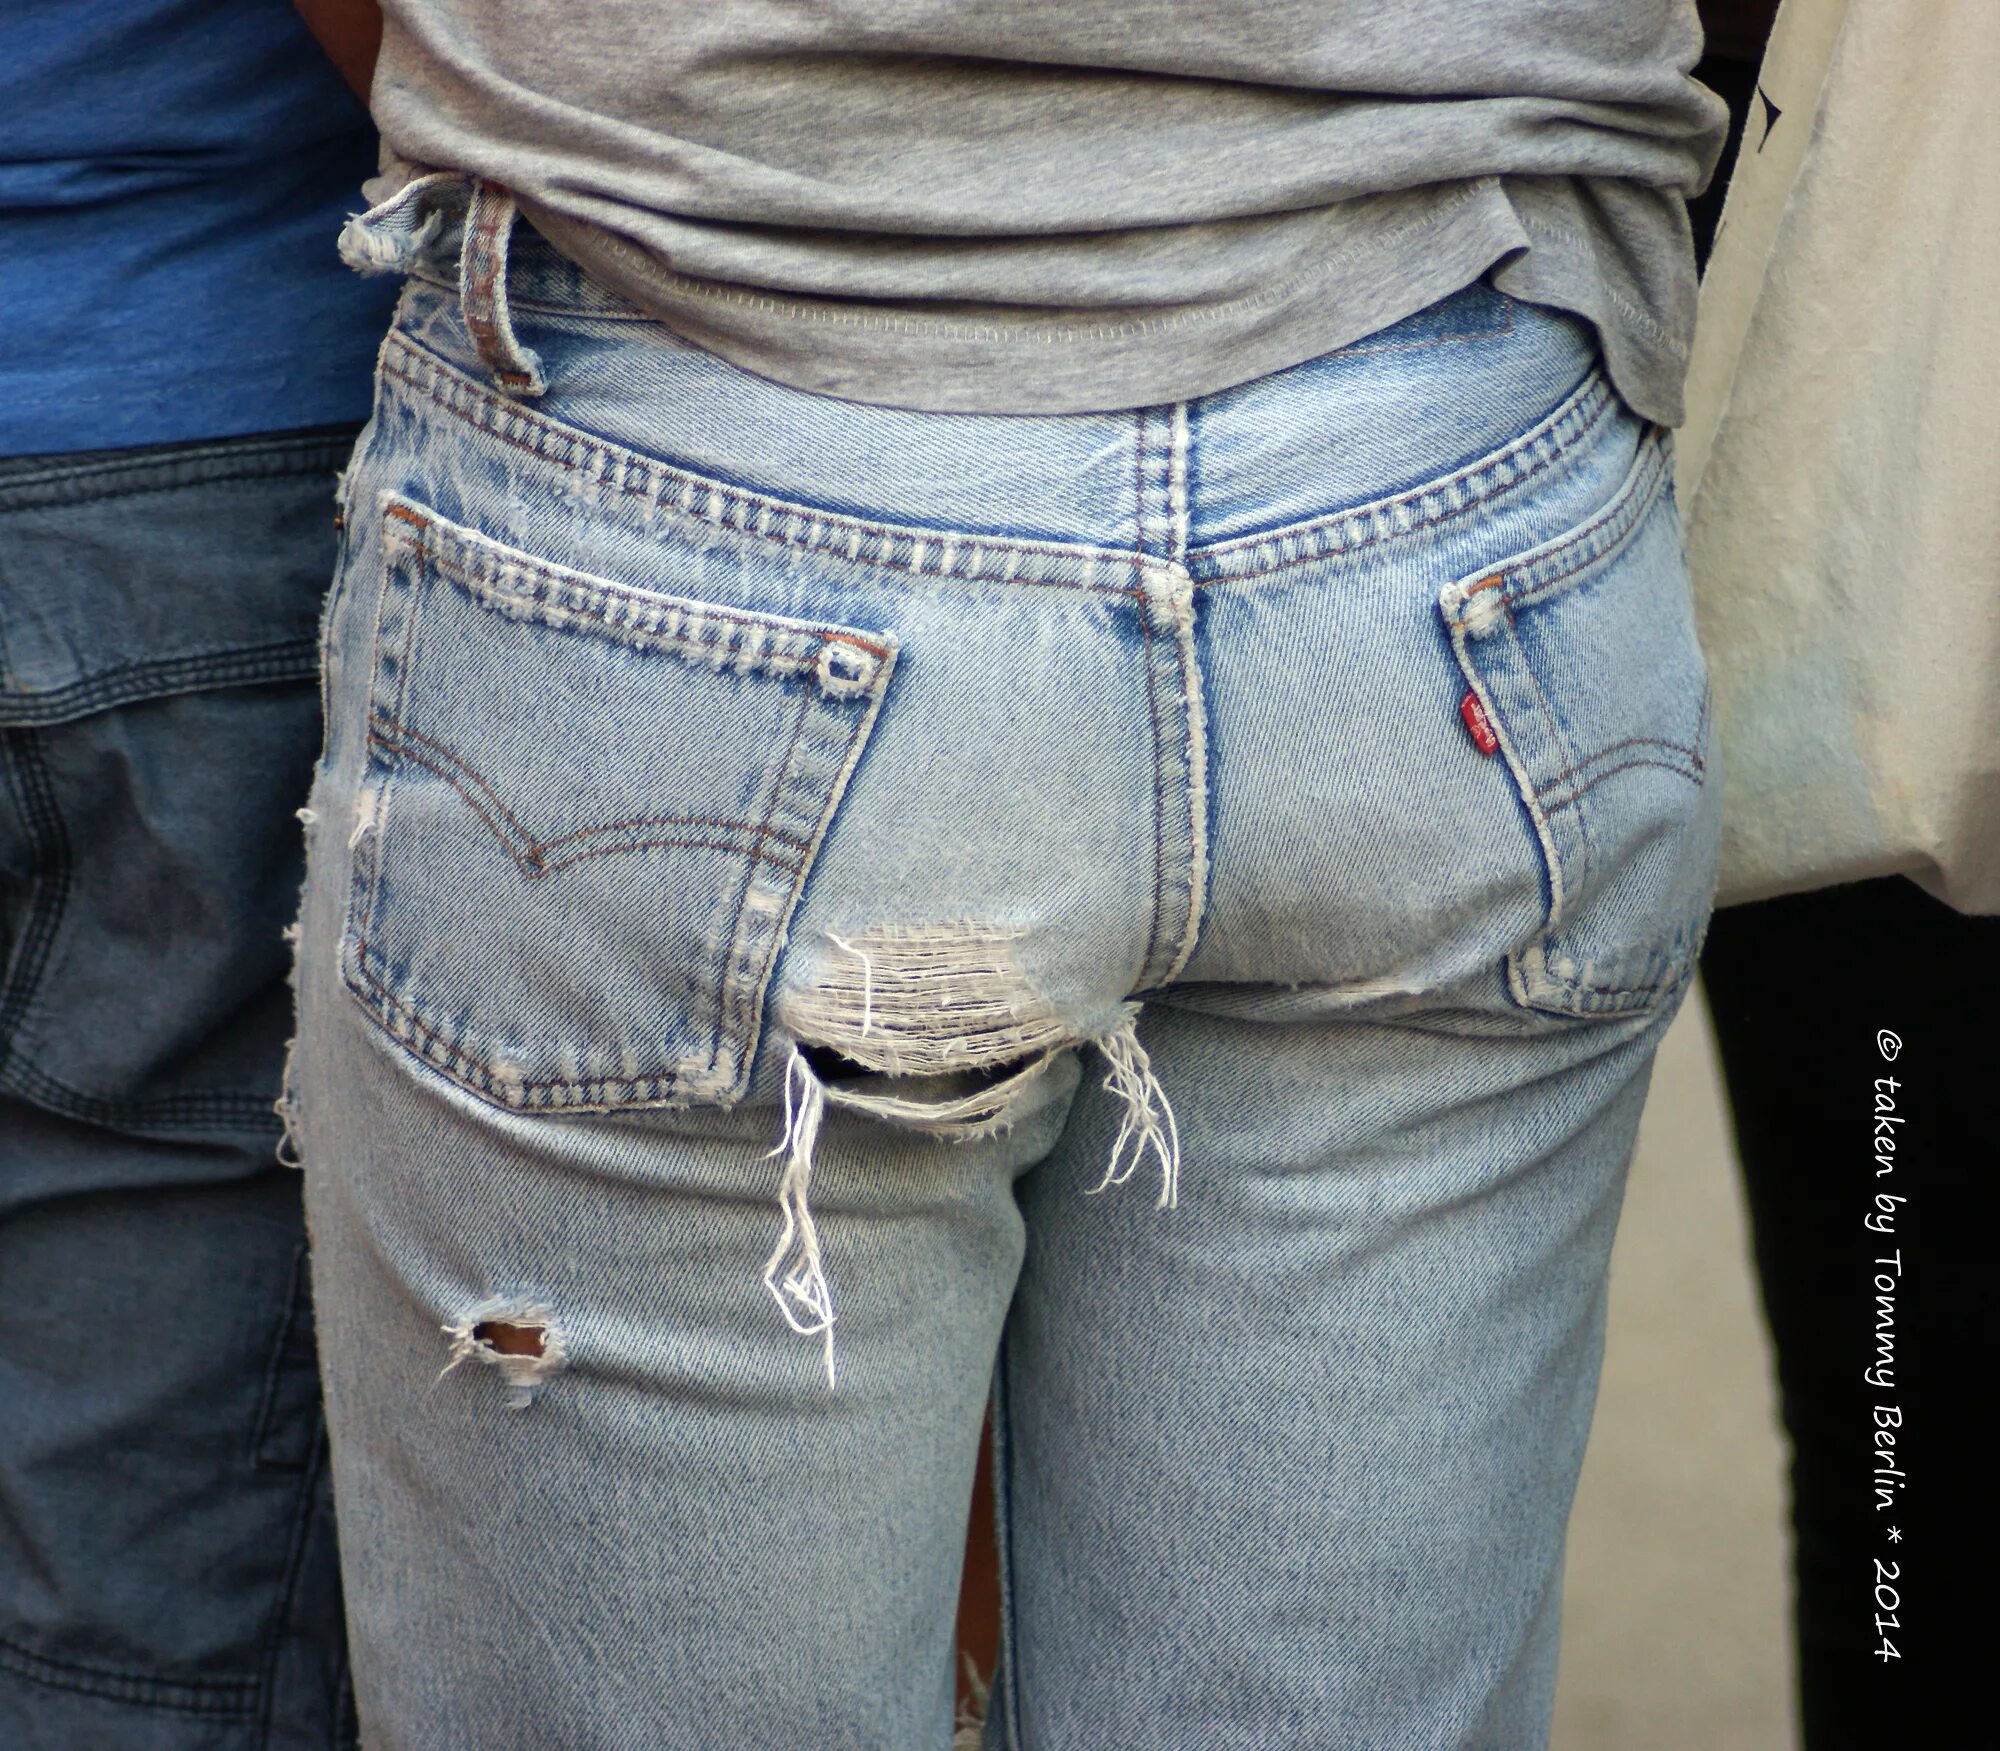 Выпуклость в джинсах. Джинсы с имитацией резинки от трусов. Гомики в джинсах левайс. Шорты порвались